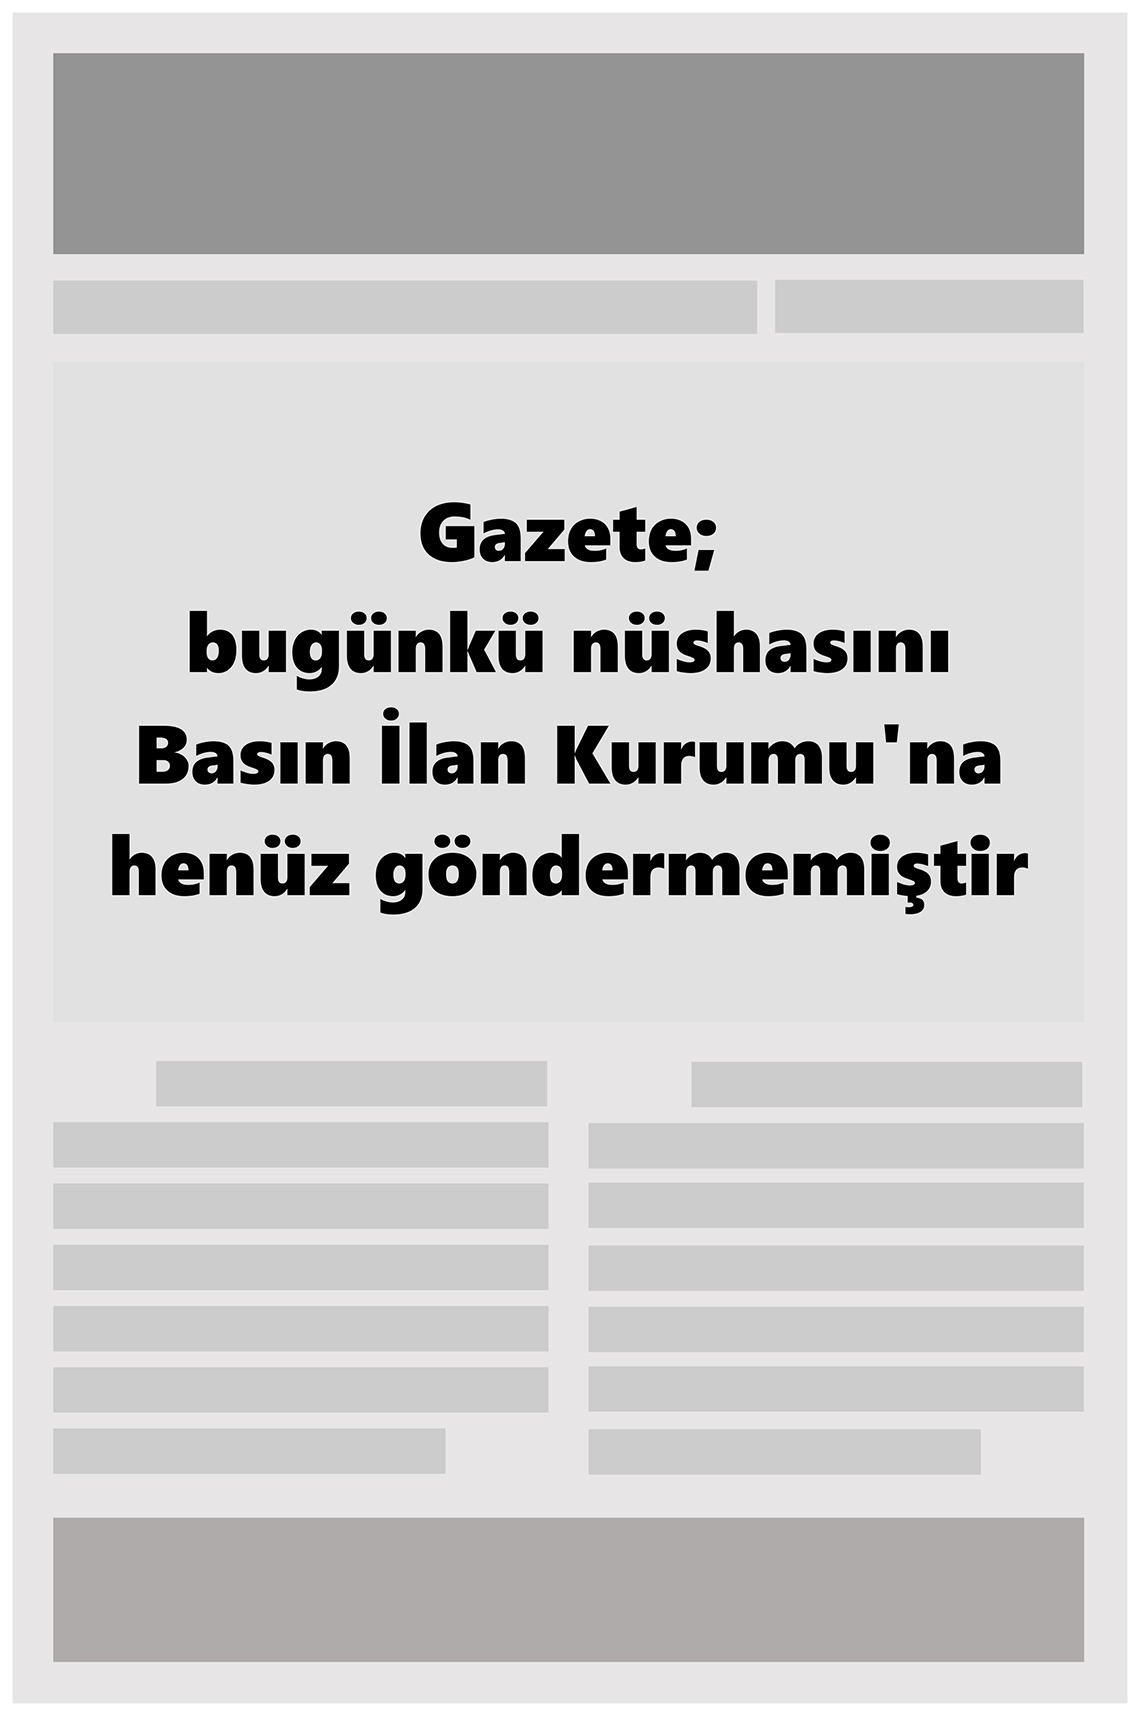 22 Mayıs 2022 Gaziantep 27 Gazete Manşeti